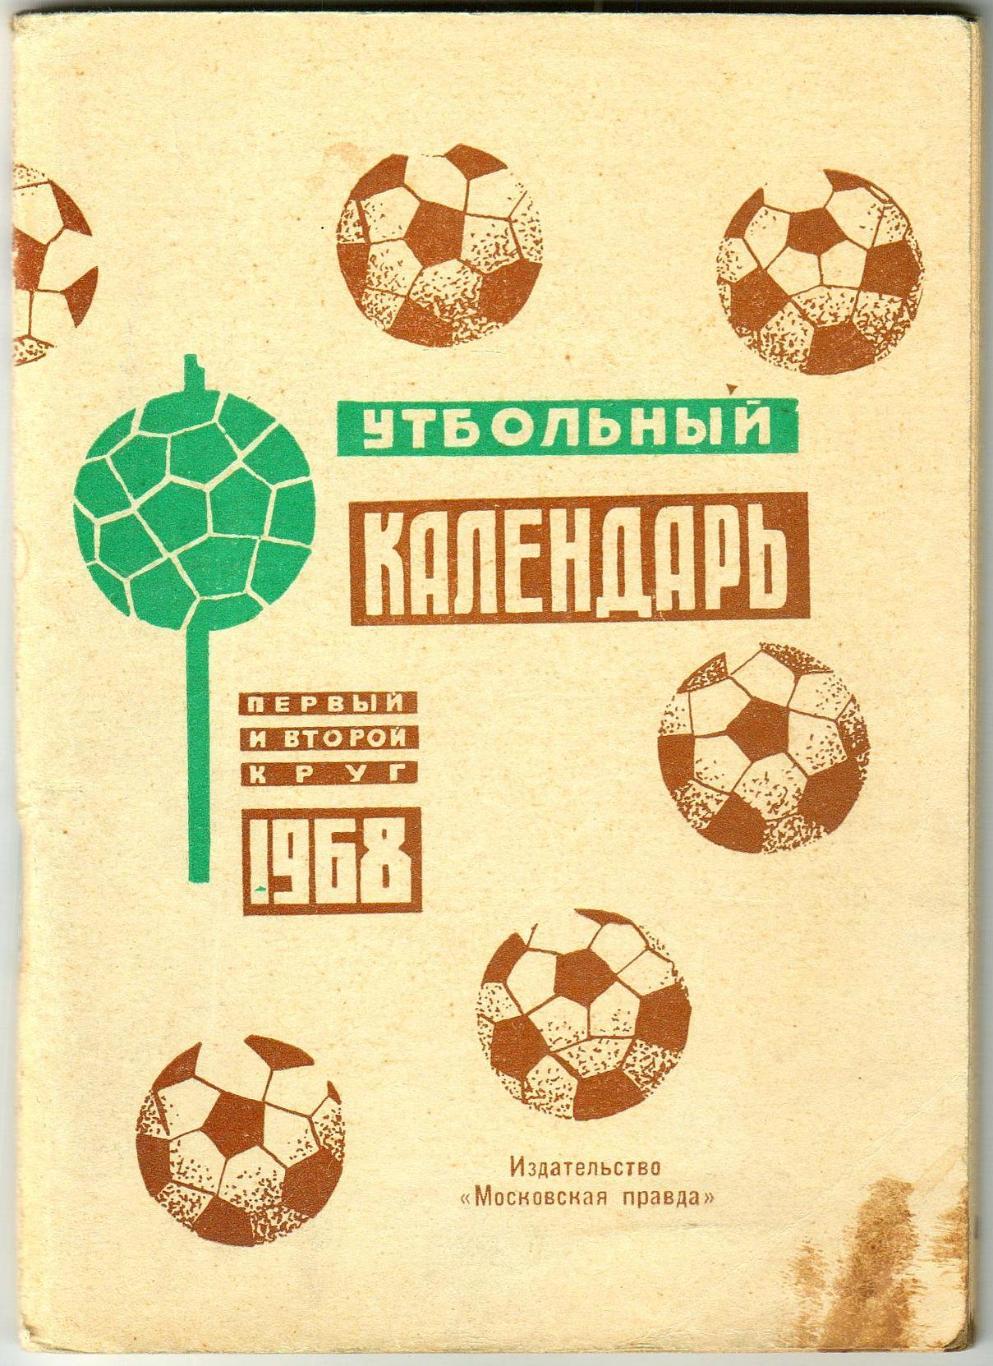 Футбольный календарь 1968 Московская правда